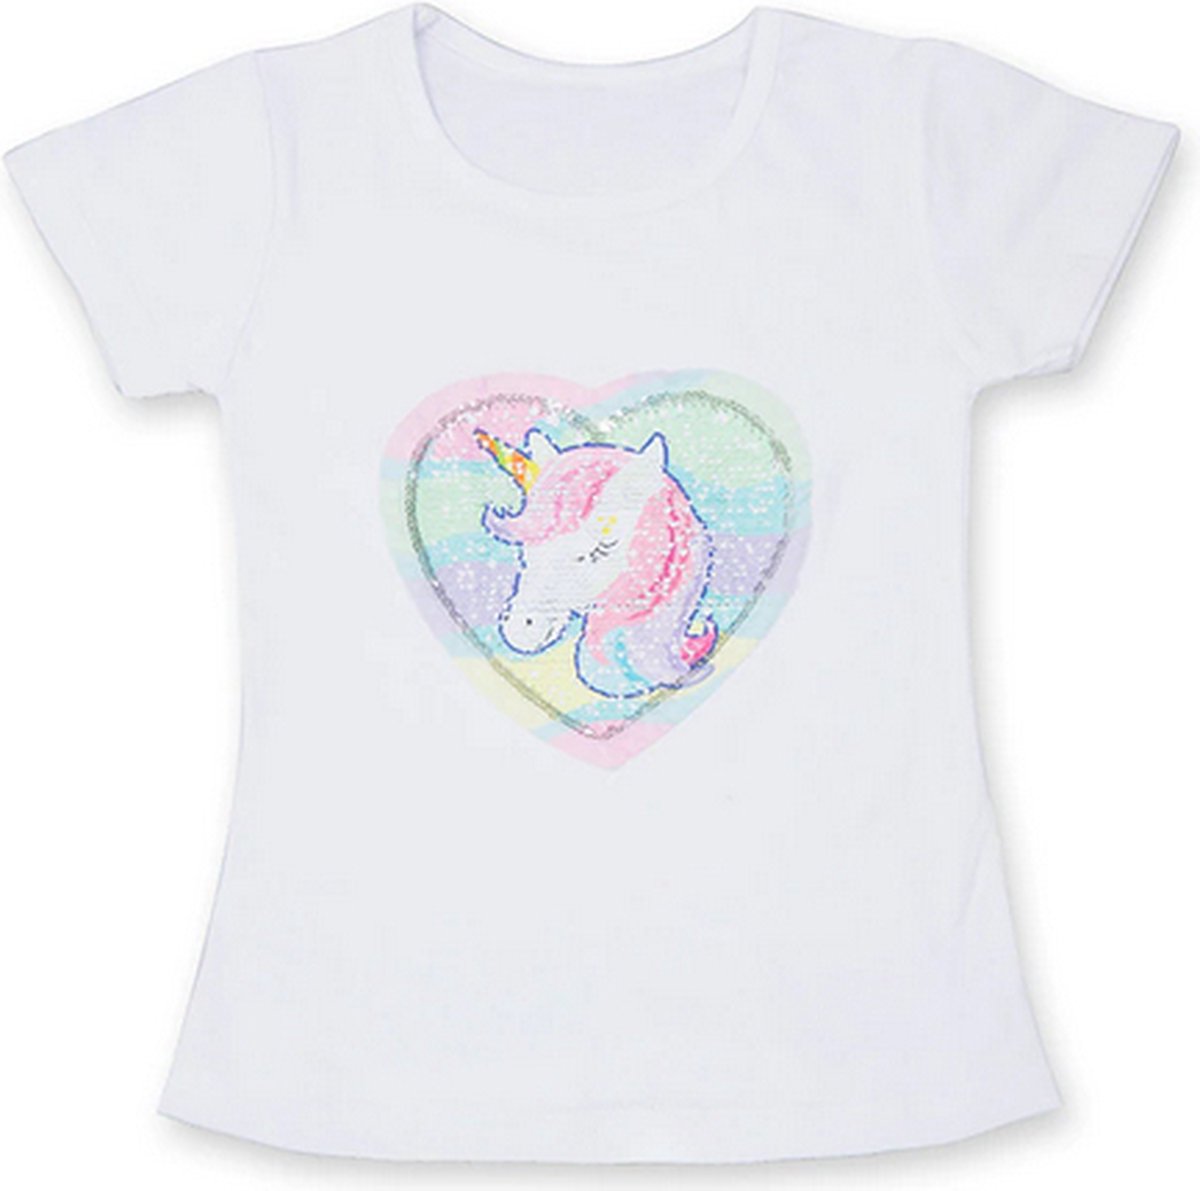 Eenhoorn tshirt meisje - pailletten eenhoorn shirt - Unicorn T-shirt pailletten - maat 110/116 / L - meisjes eenhoorn shirt 4 - 5 jaar